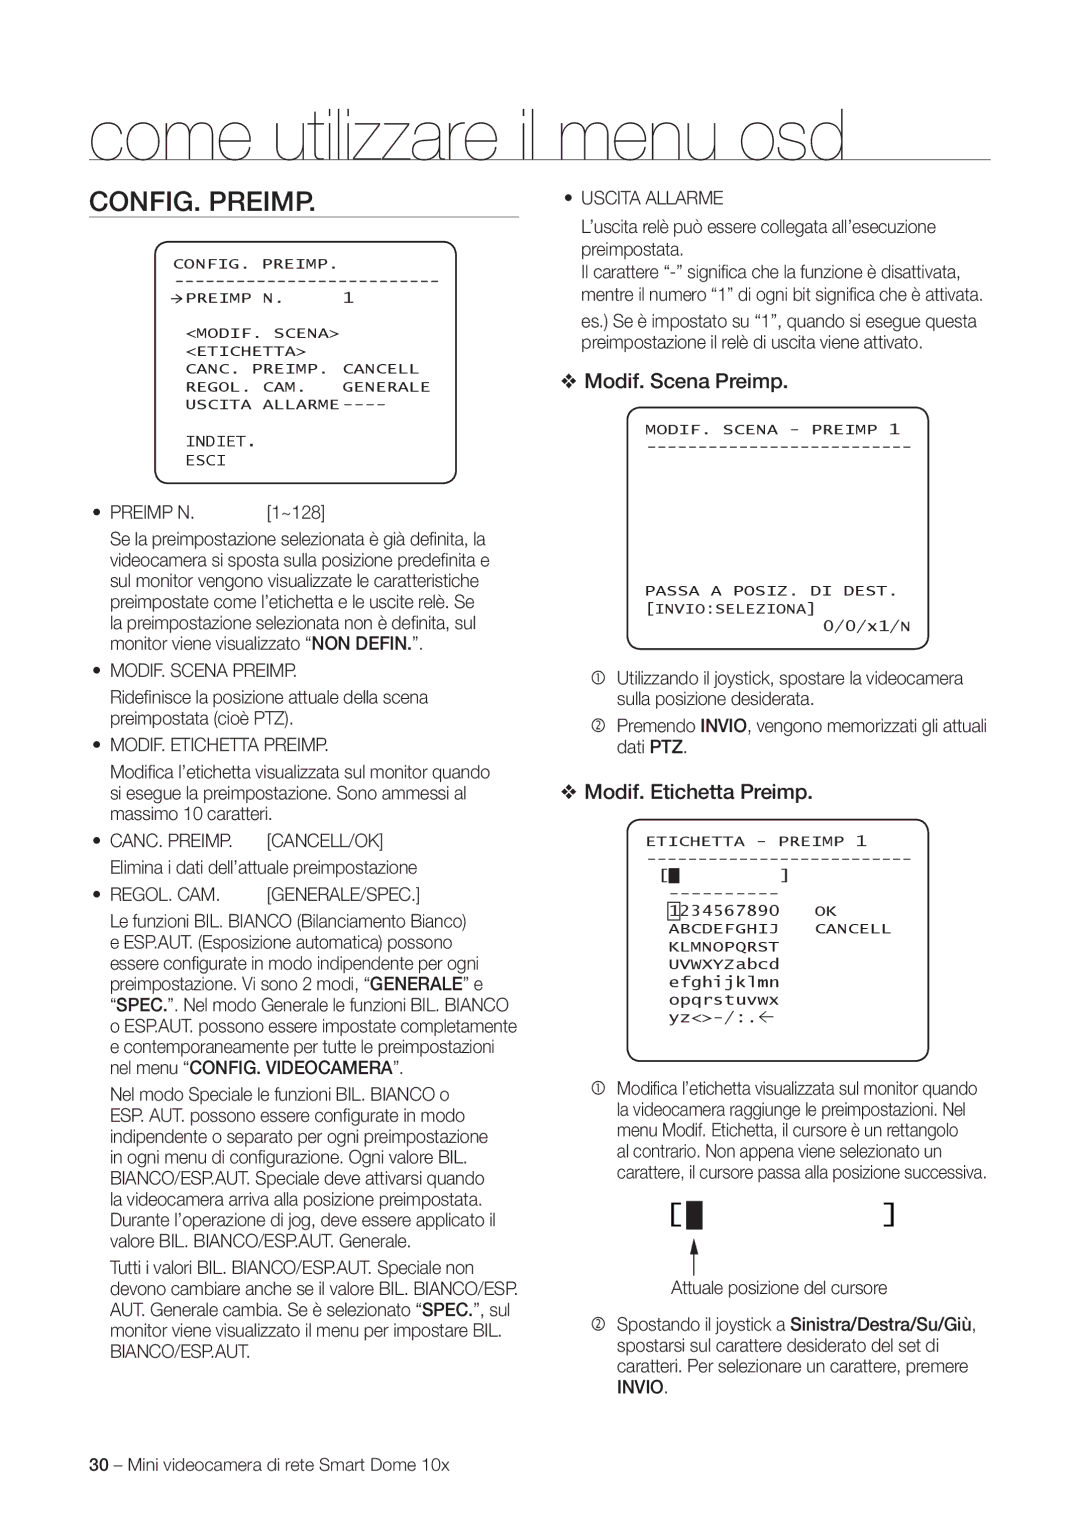 Samsung SNC-C6225P, SNC-C7225P manual CONFIG. Preimp, Modif. Scena Preimp, Modif. Etichetta Preimp 